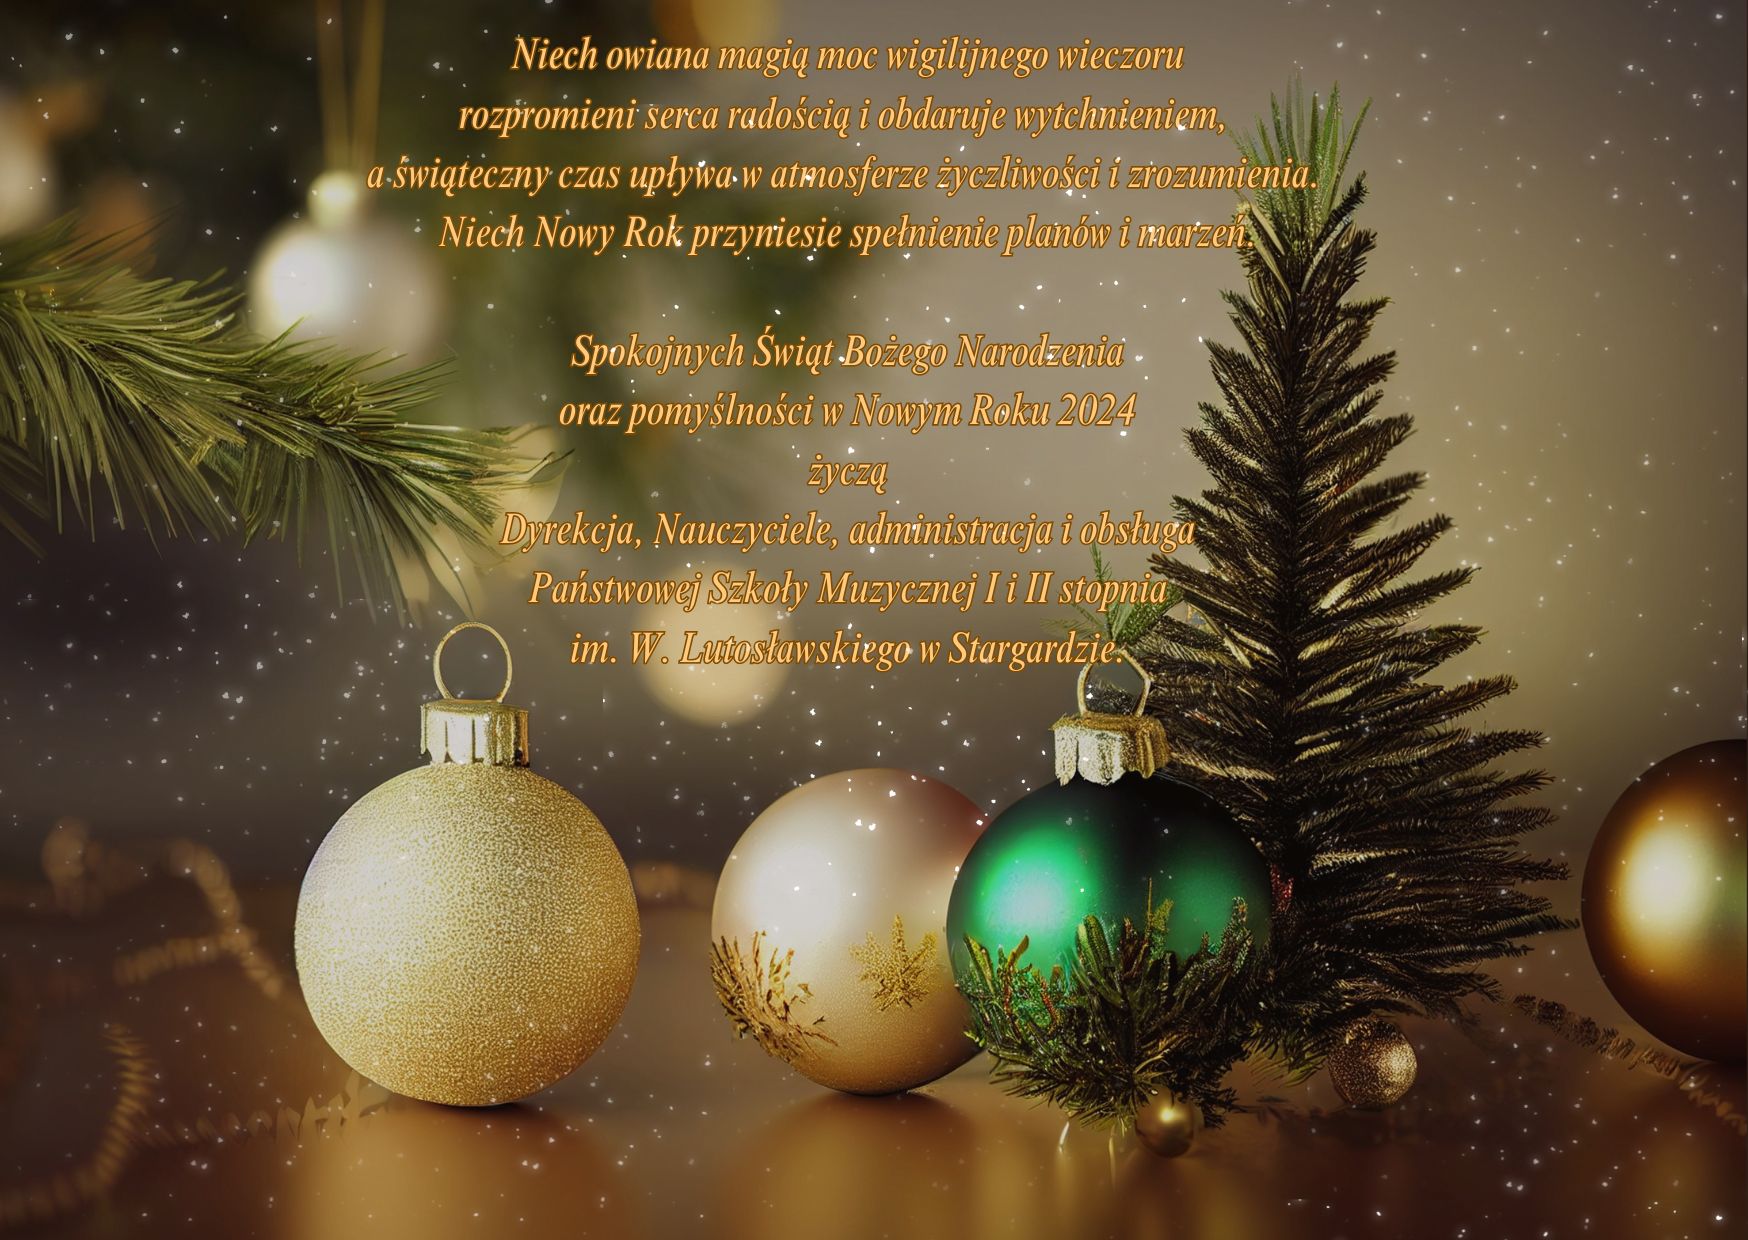 Kartka z życzeniami z okazji Świąt Bożego Narodzenia i Nowego Roku 2024. Na zdjęciu znajdują się złote i zielone bombki oraz choinka.